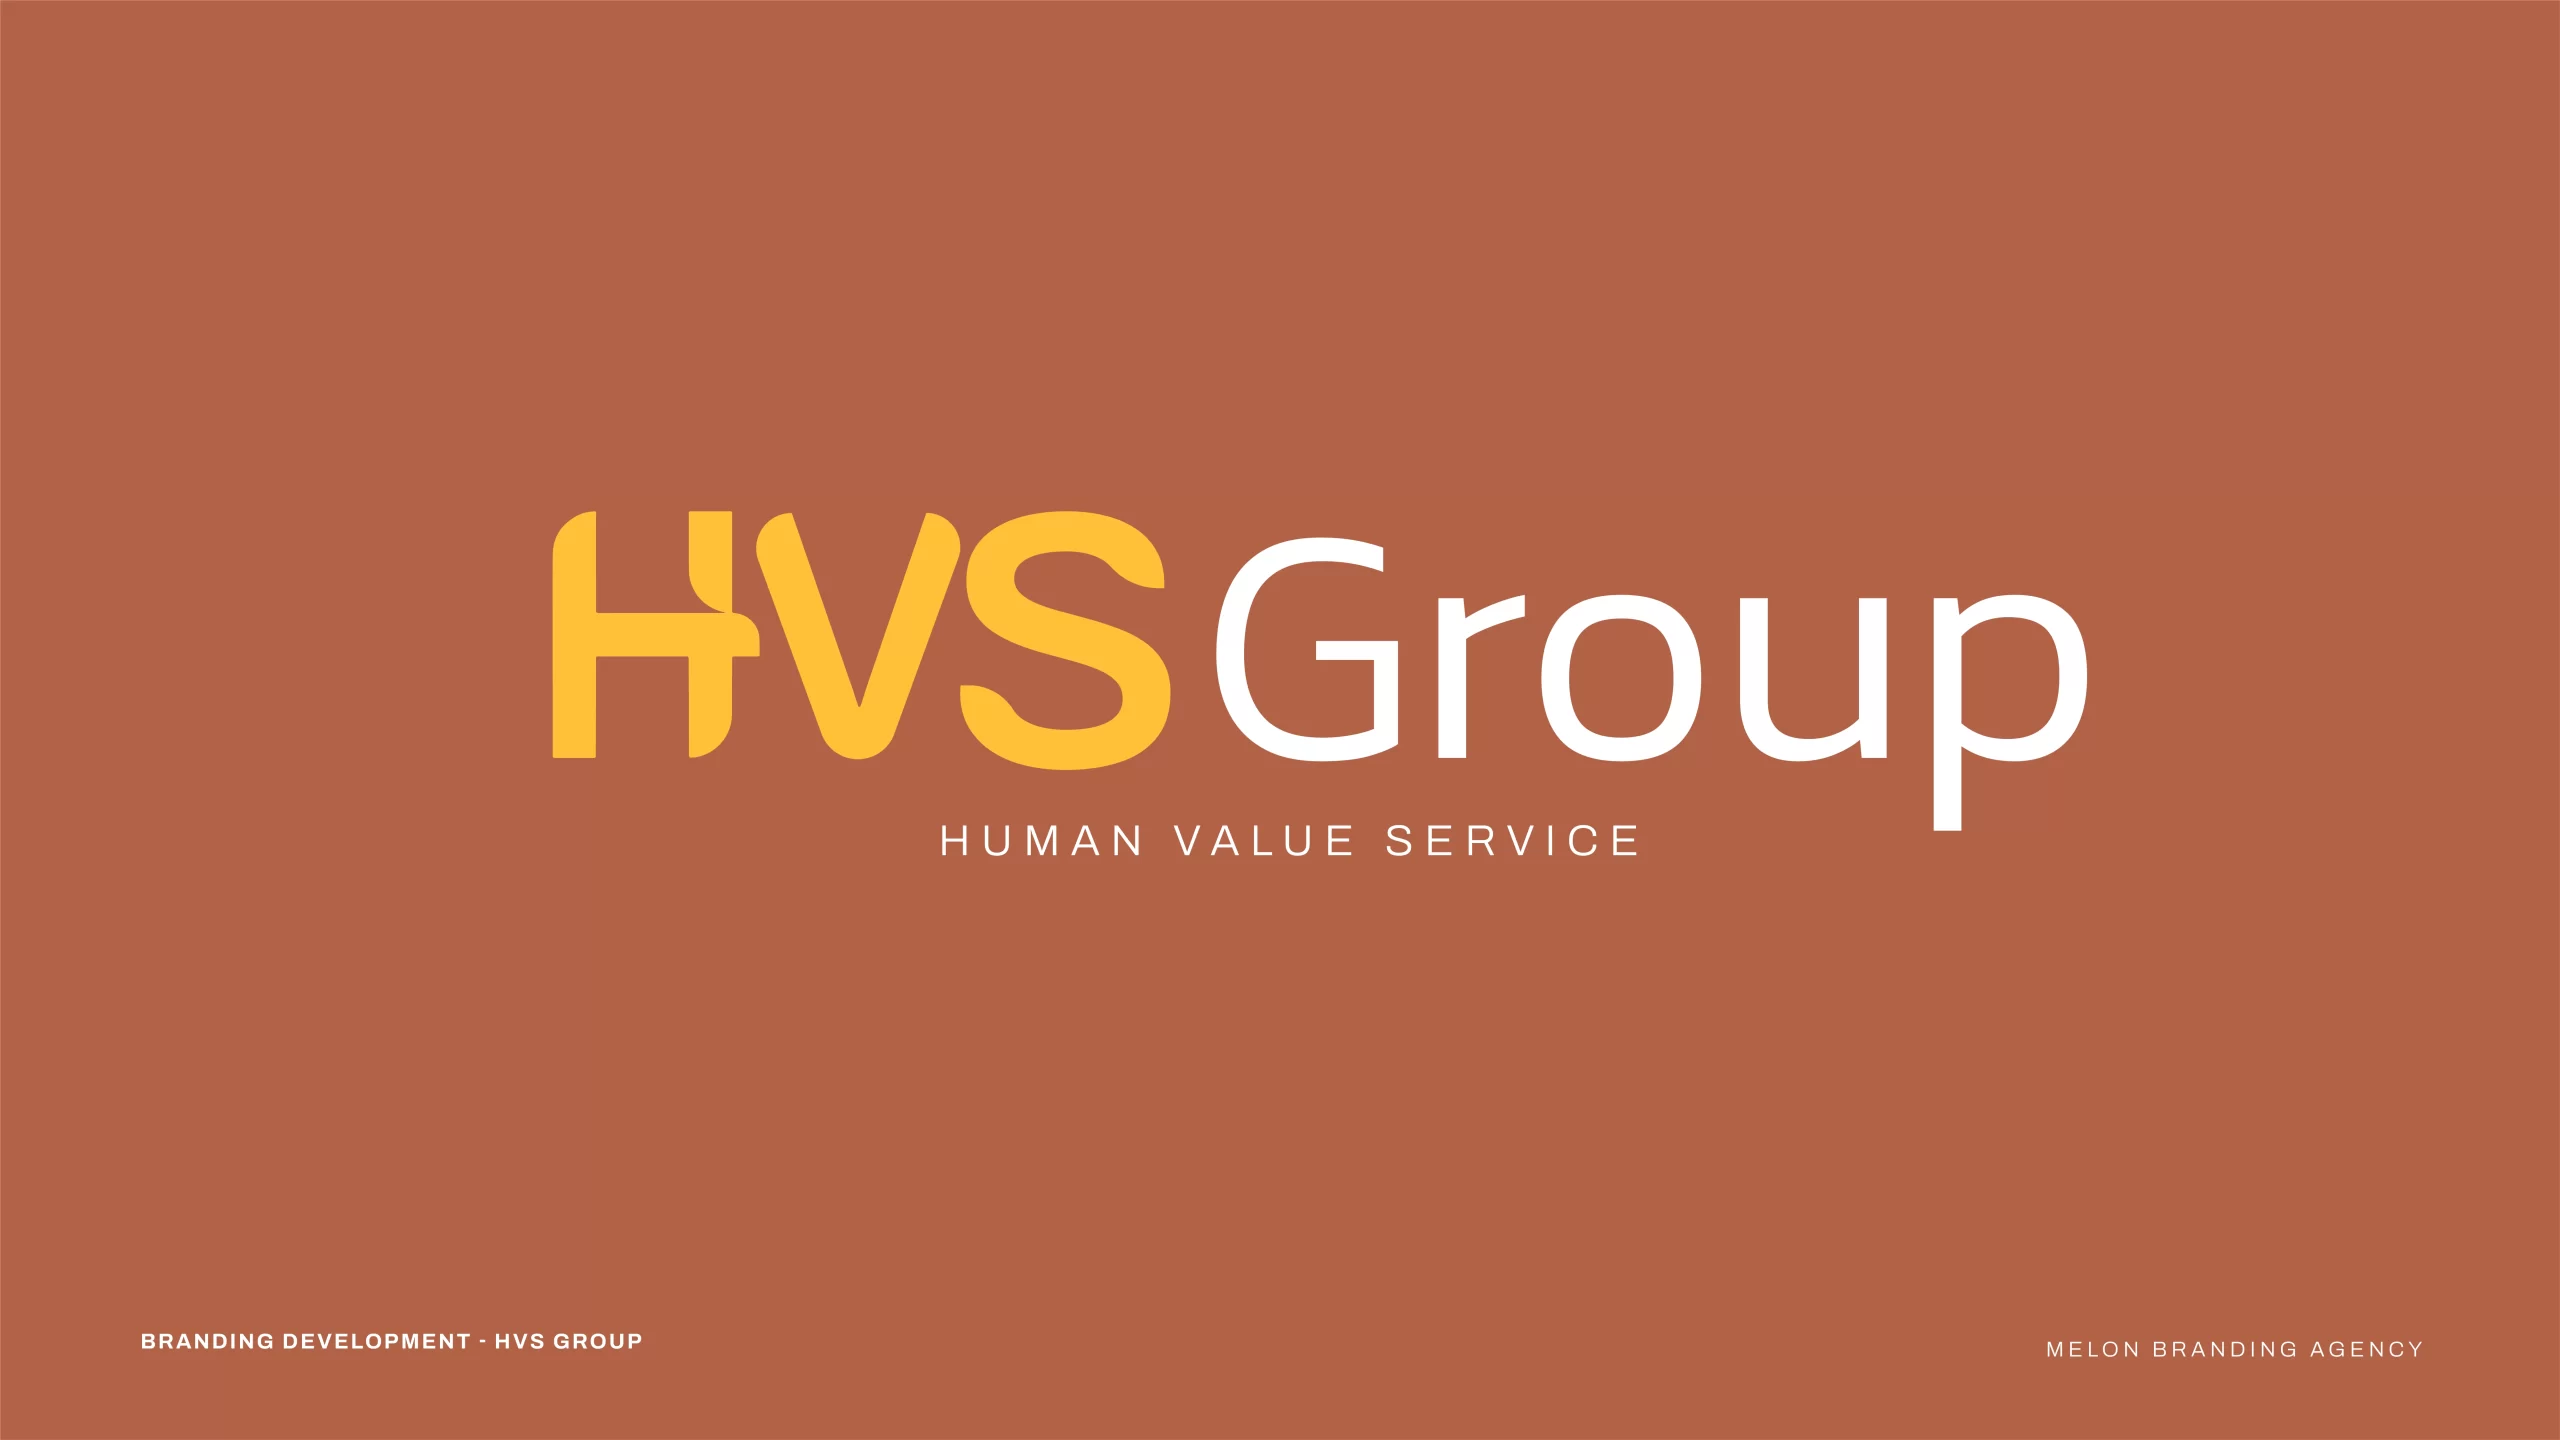 HVS Group